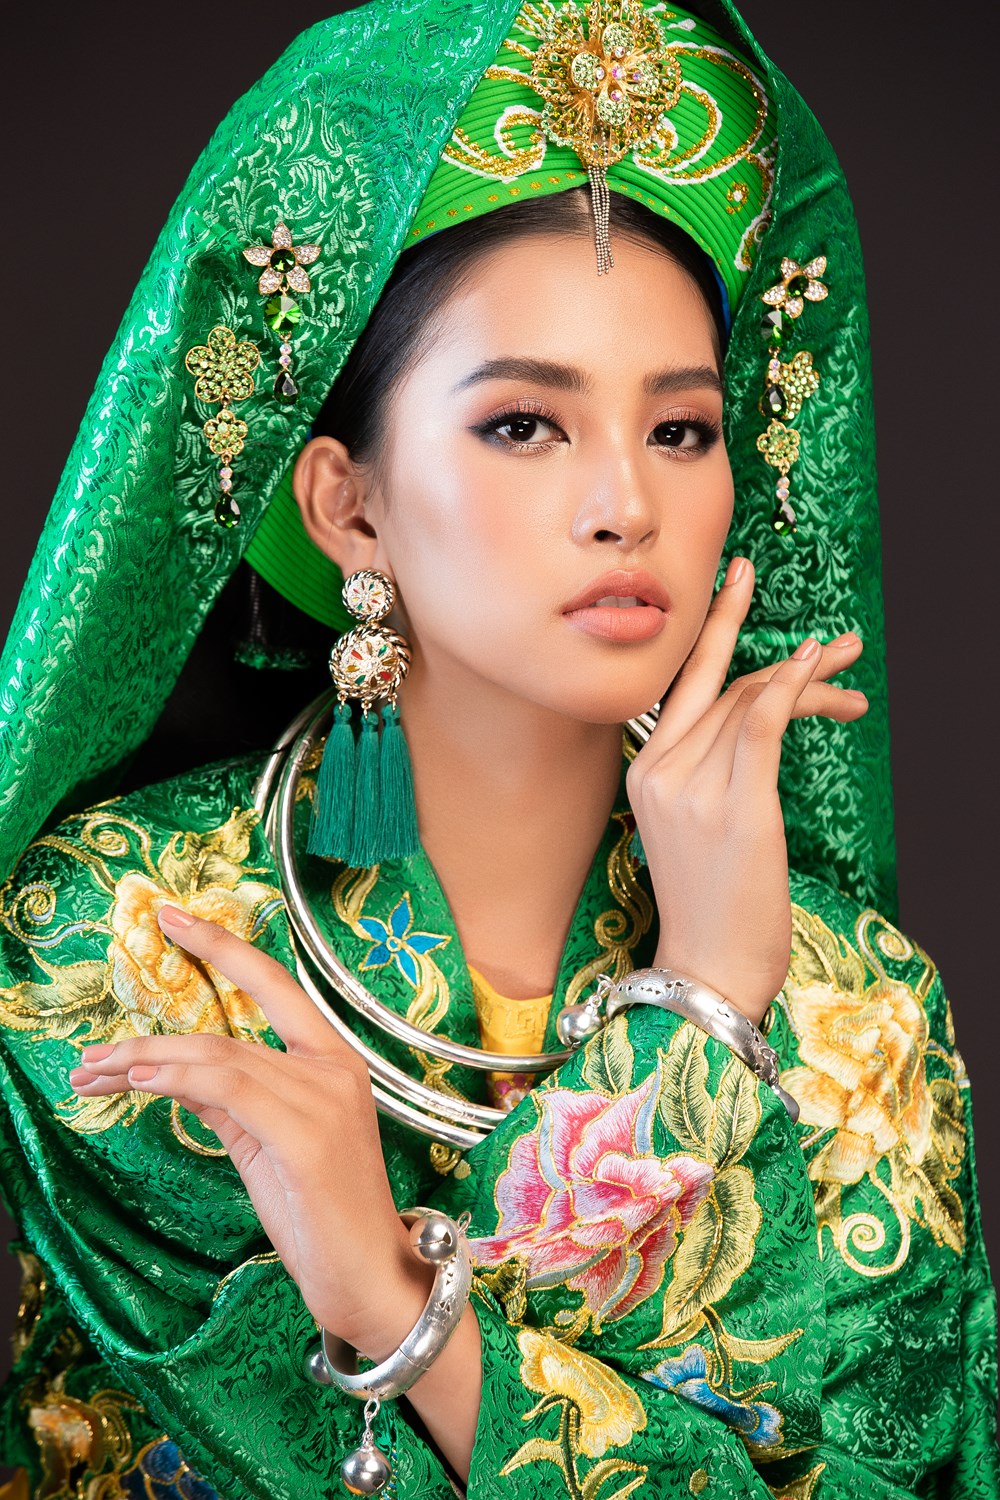 Hoa hậu Tiểu Vy trình diễn nghệ thuật chầu văn tại MissWorld - ảnh 3